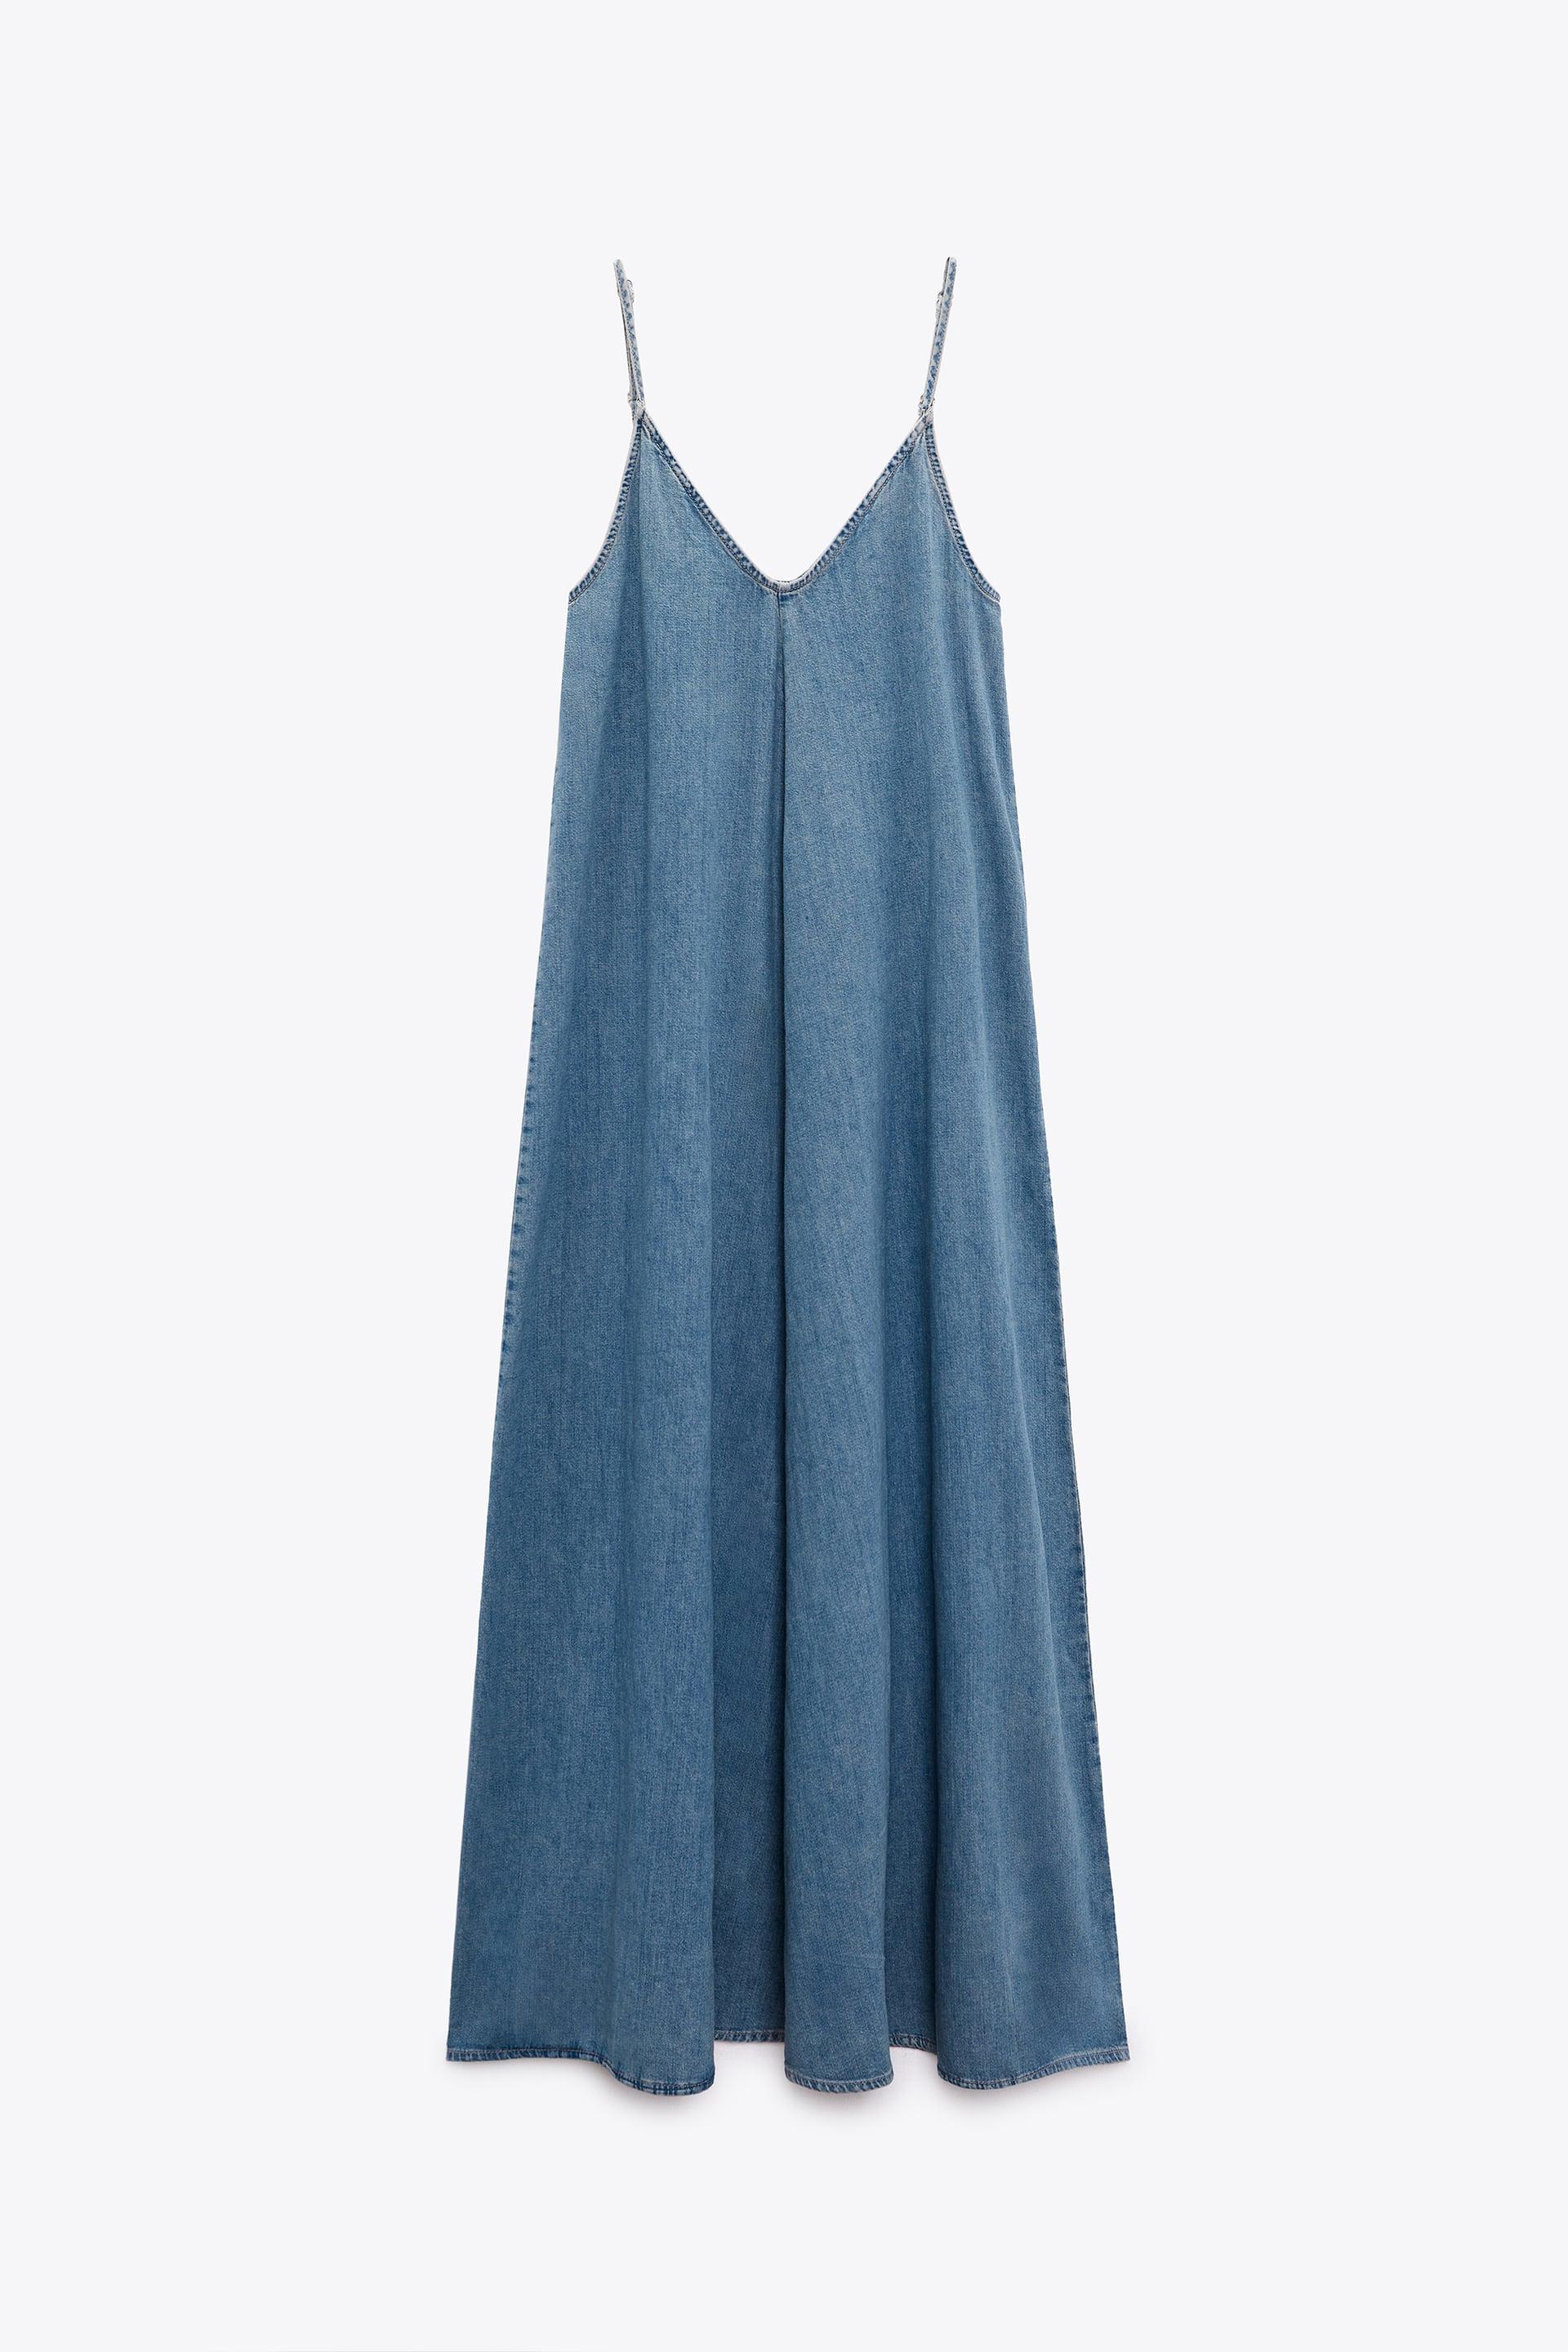 Vestidos sencillos de Zara: de corte fluido